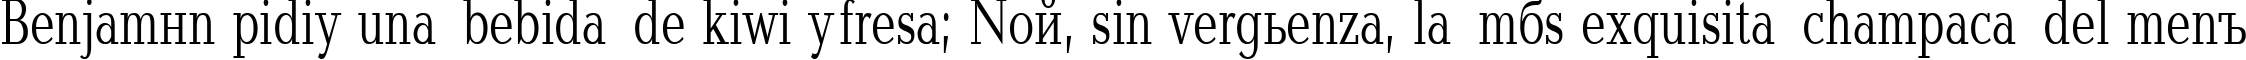 Пример написания шрифтом Baltica70n текста на испанском